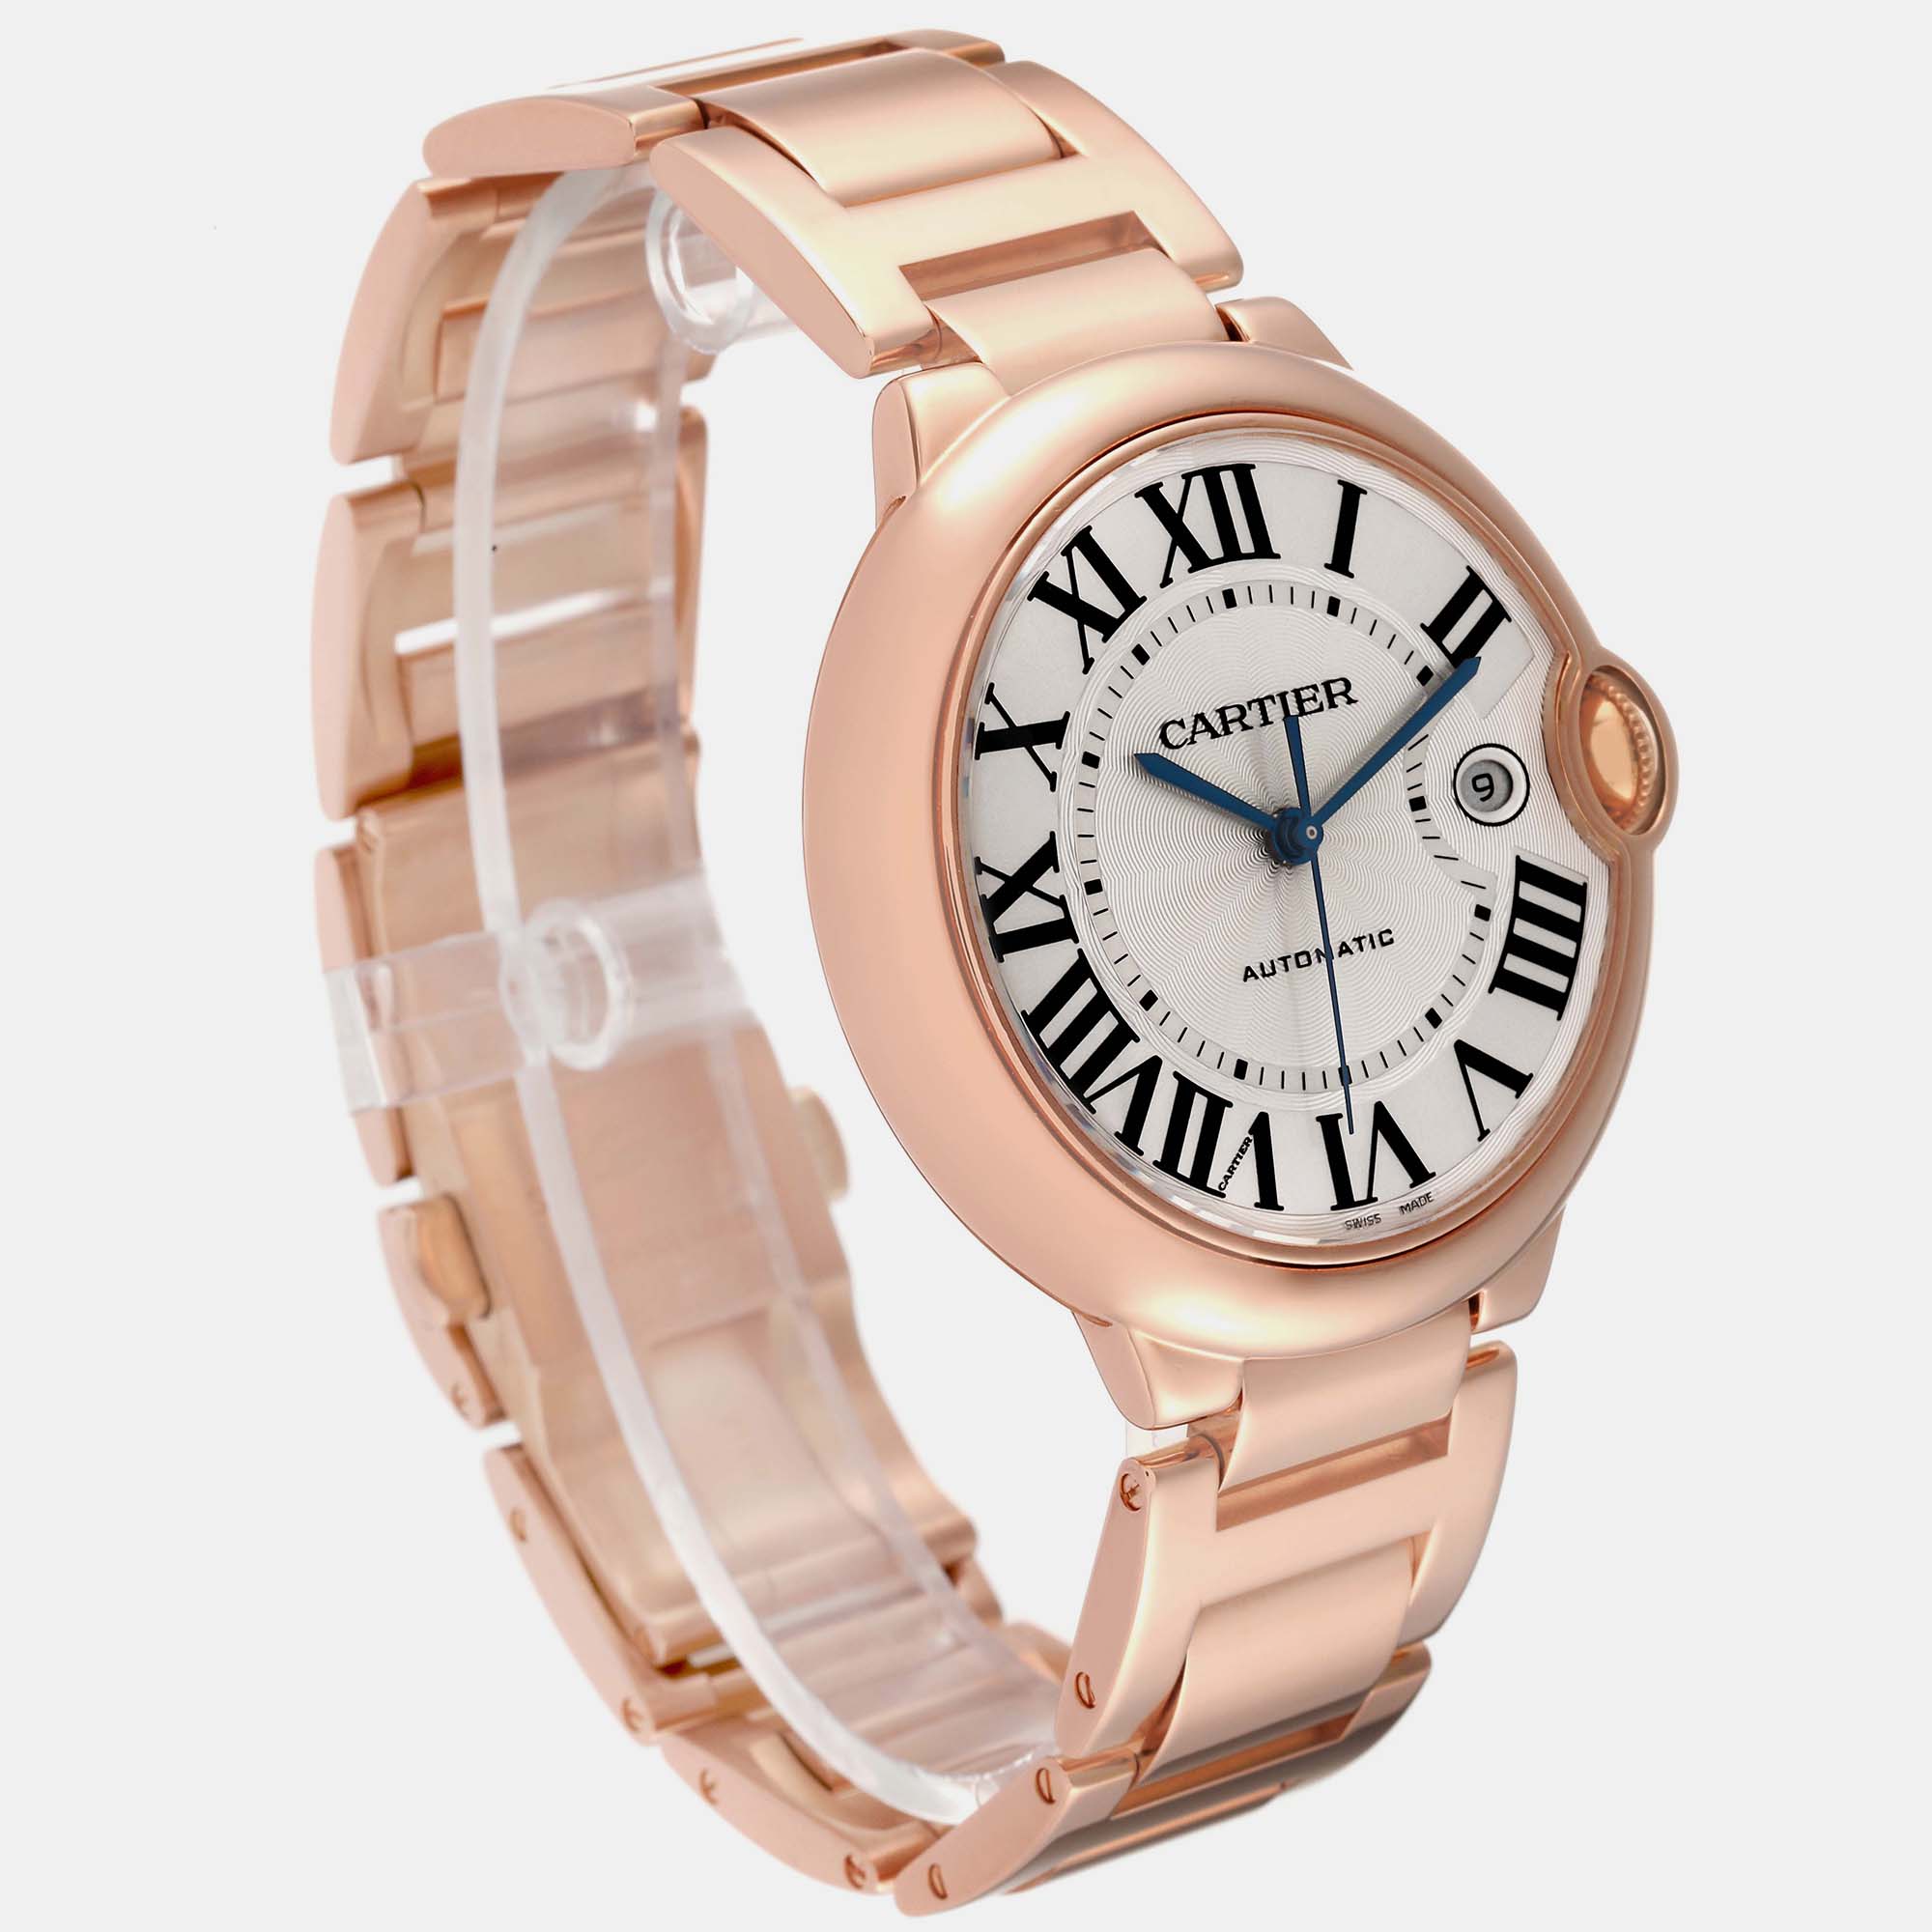 Cartier Ballon Bleu Rose Gold Automatic Men's Watch W69006Z2 42 Mm